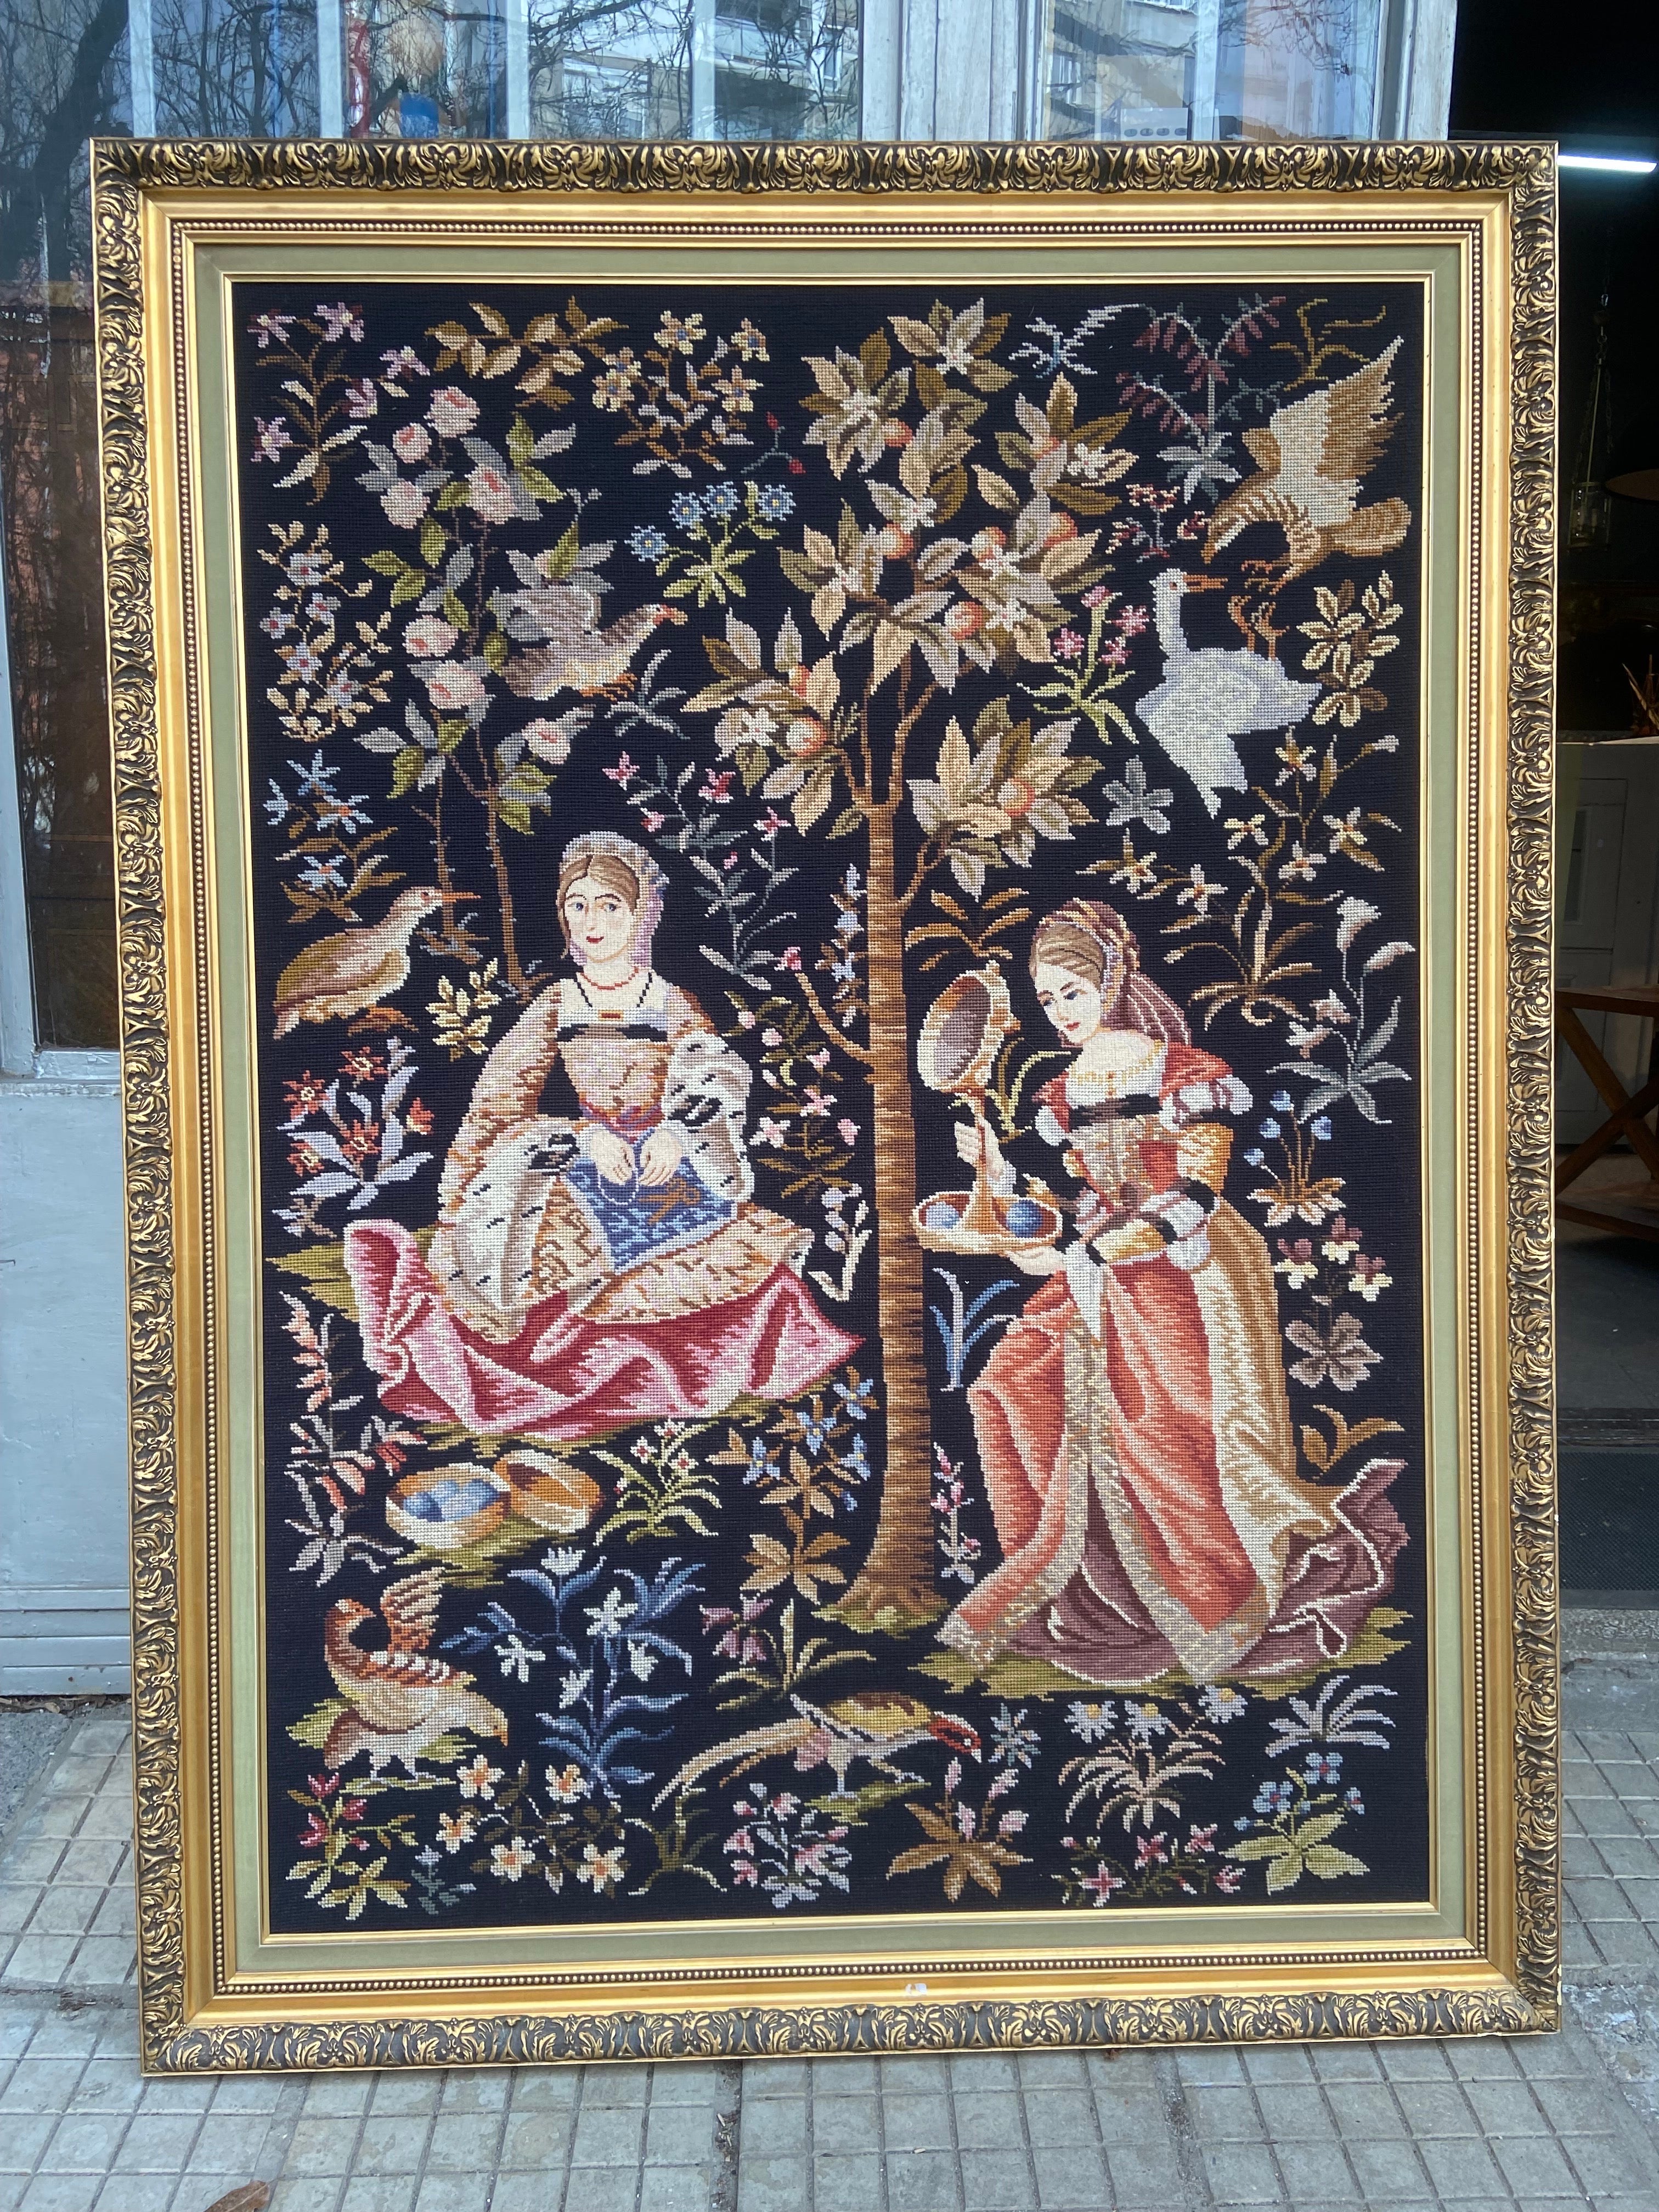 Maschinell hergestellter französischer Wollteppich in einem Rahmen, der eine mittelalterliche Szene mit zwei von Vögeln umschwärmten Damen vor einem Hintergrund aus schönen Bäumen und Blütenblättern darstellt. Sehr guter authentischer Zustand, keine